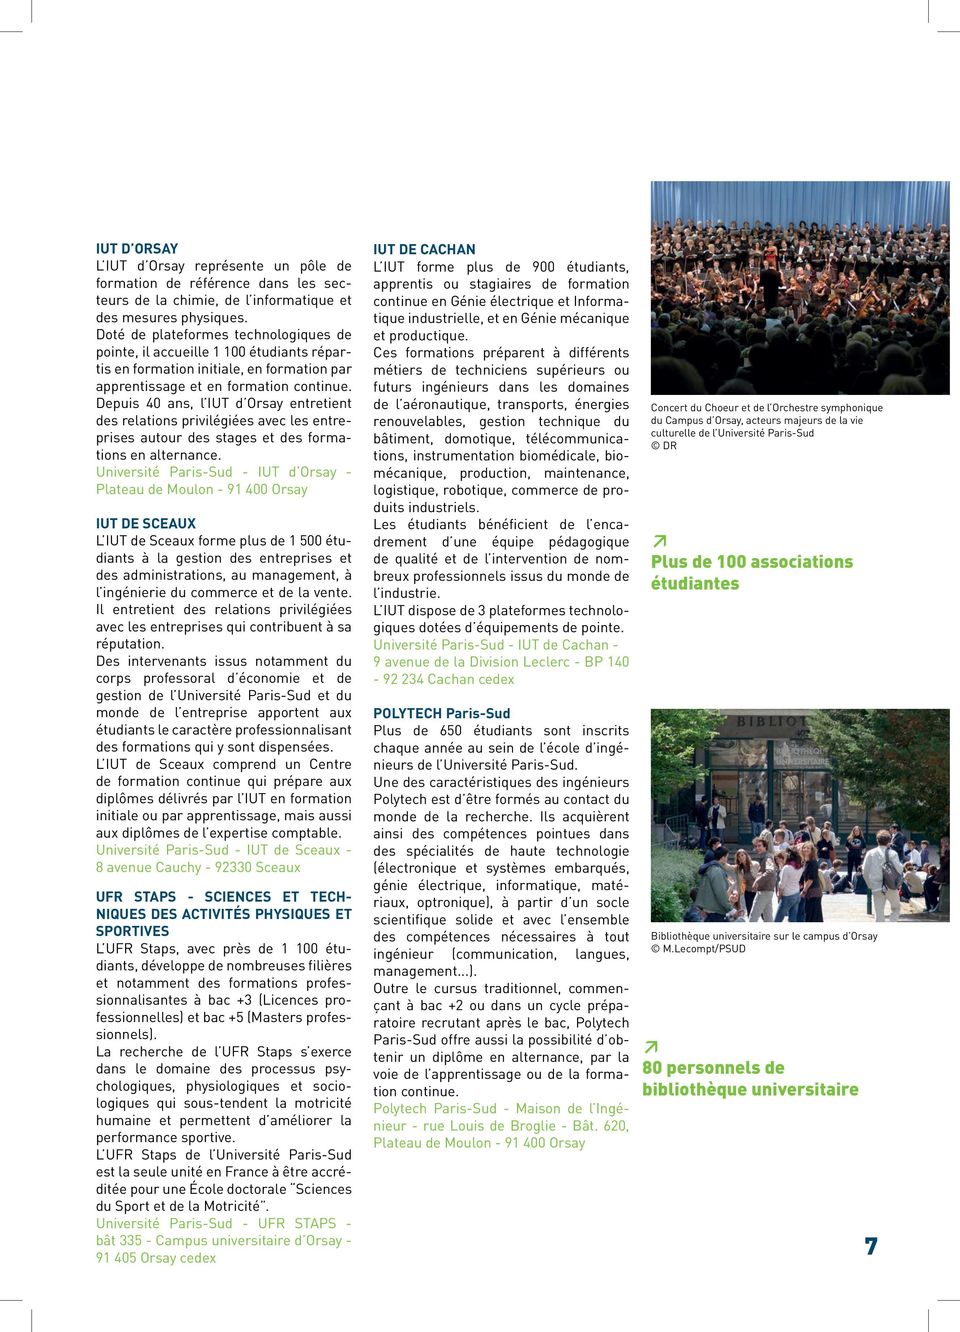 Depuis 40 ans, l IUT d Orsay entretient des relations privilégiées avec les entreprises autour des stages et des formations en alternance.